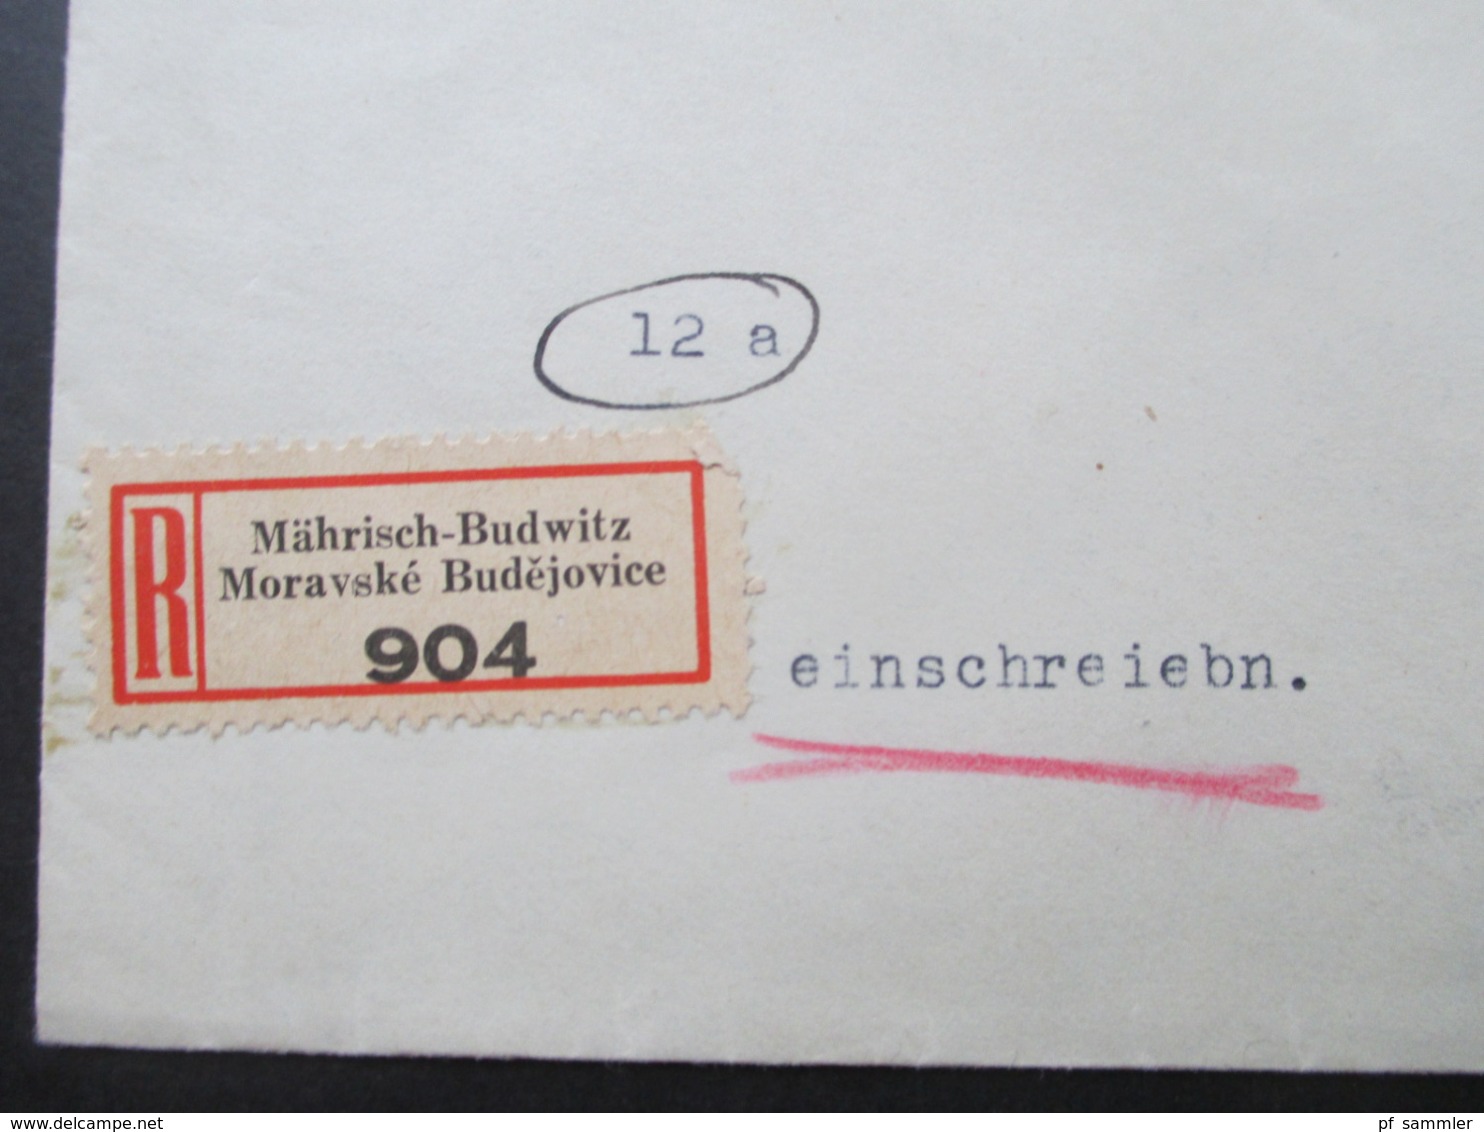 Böhmen Und Mähren Einschreiben 2 Sprachiger E Zettel Mährisch Budwitz Moravske Budejovice - Wien Freimarken Adoif Hitler - Brieven En Documenten